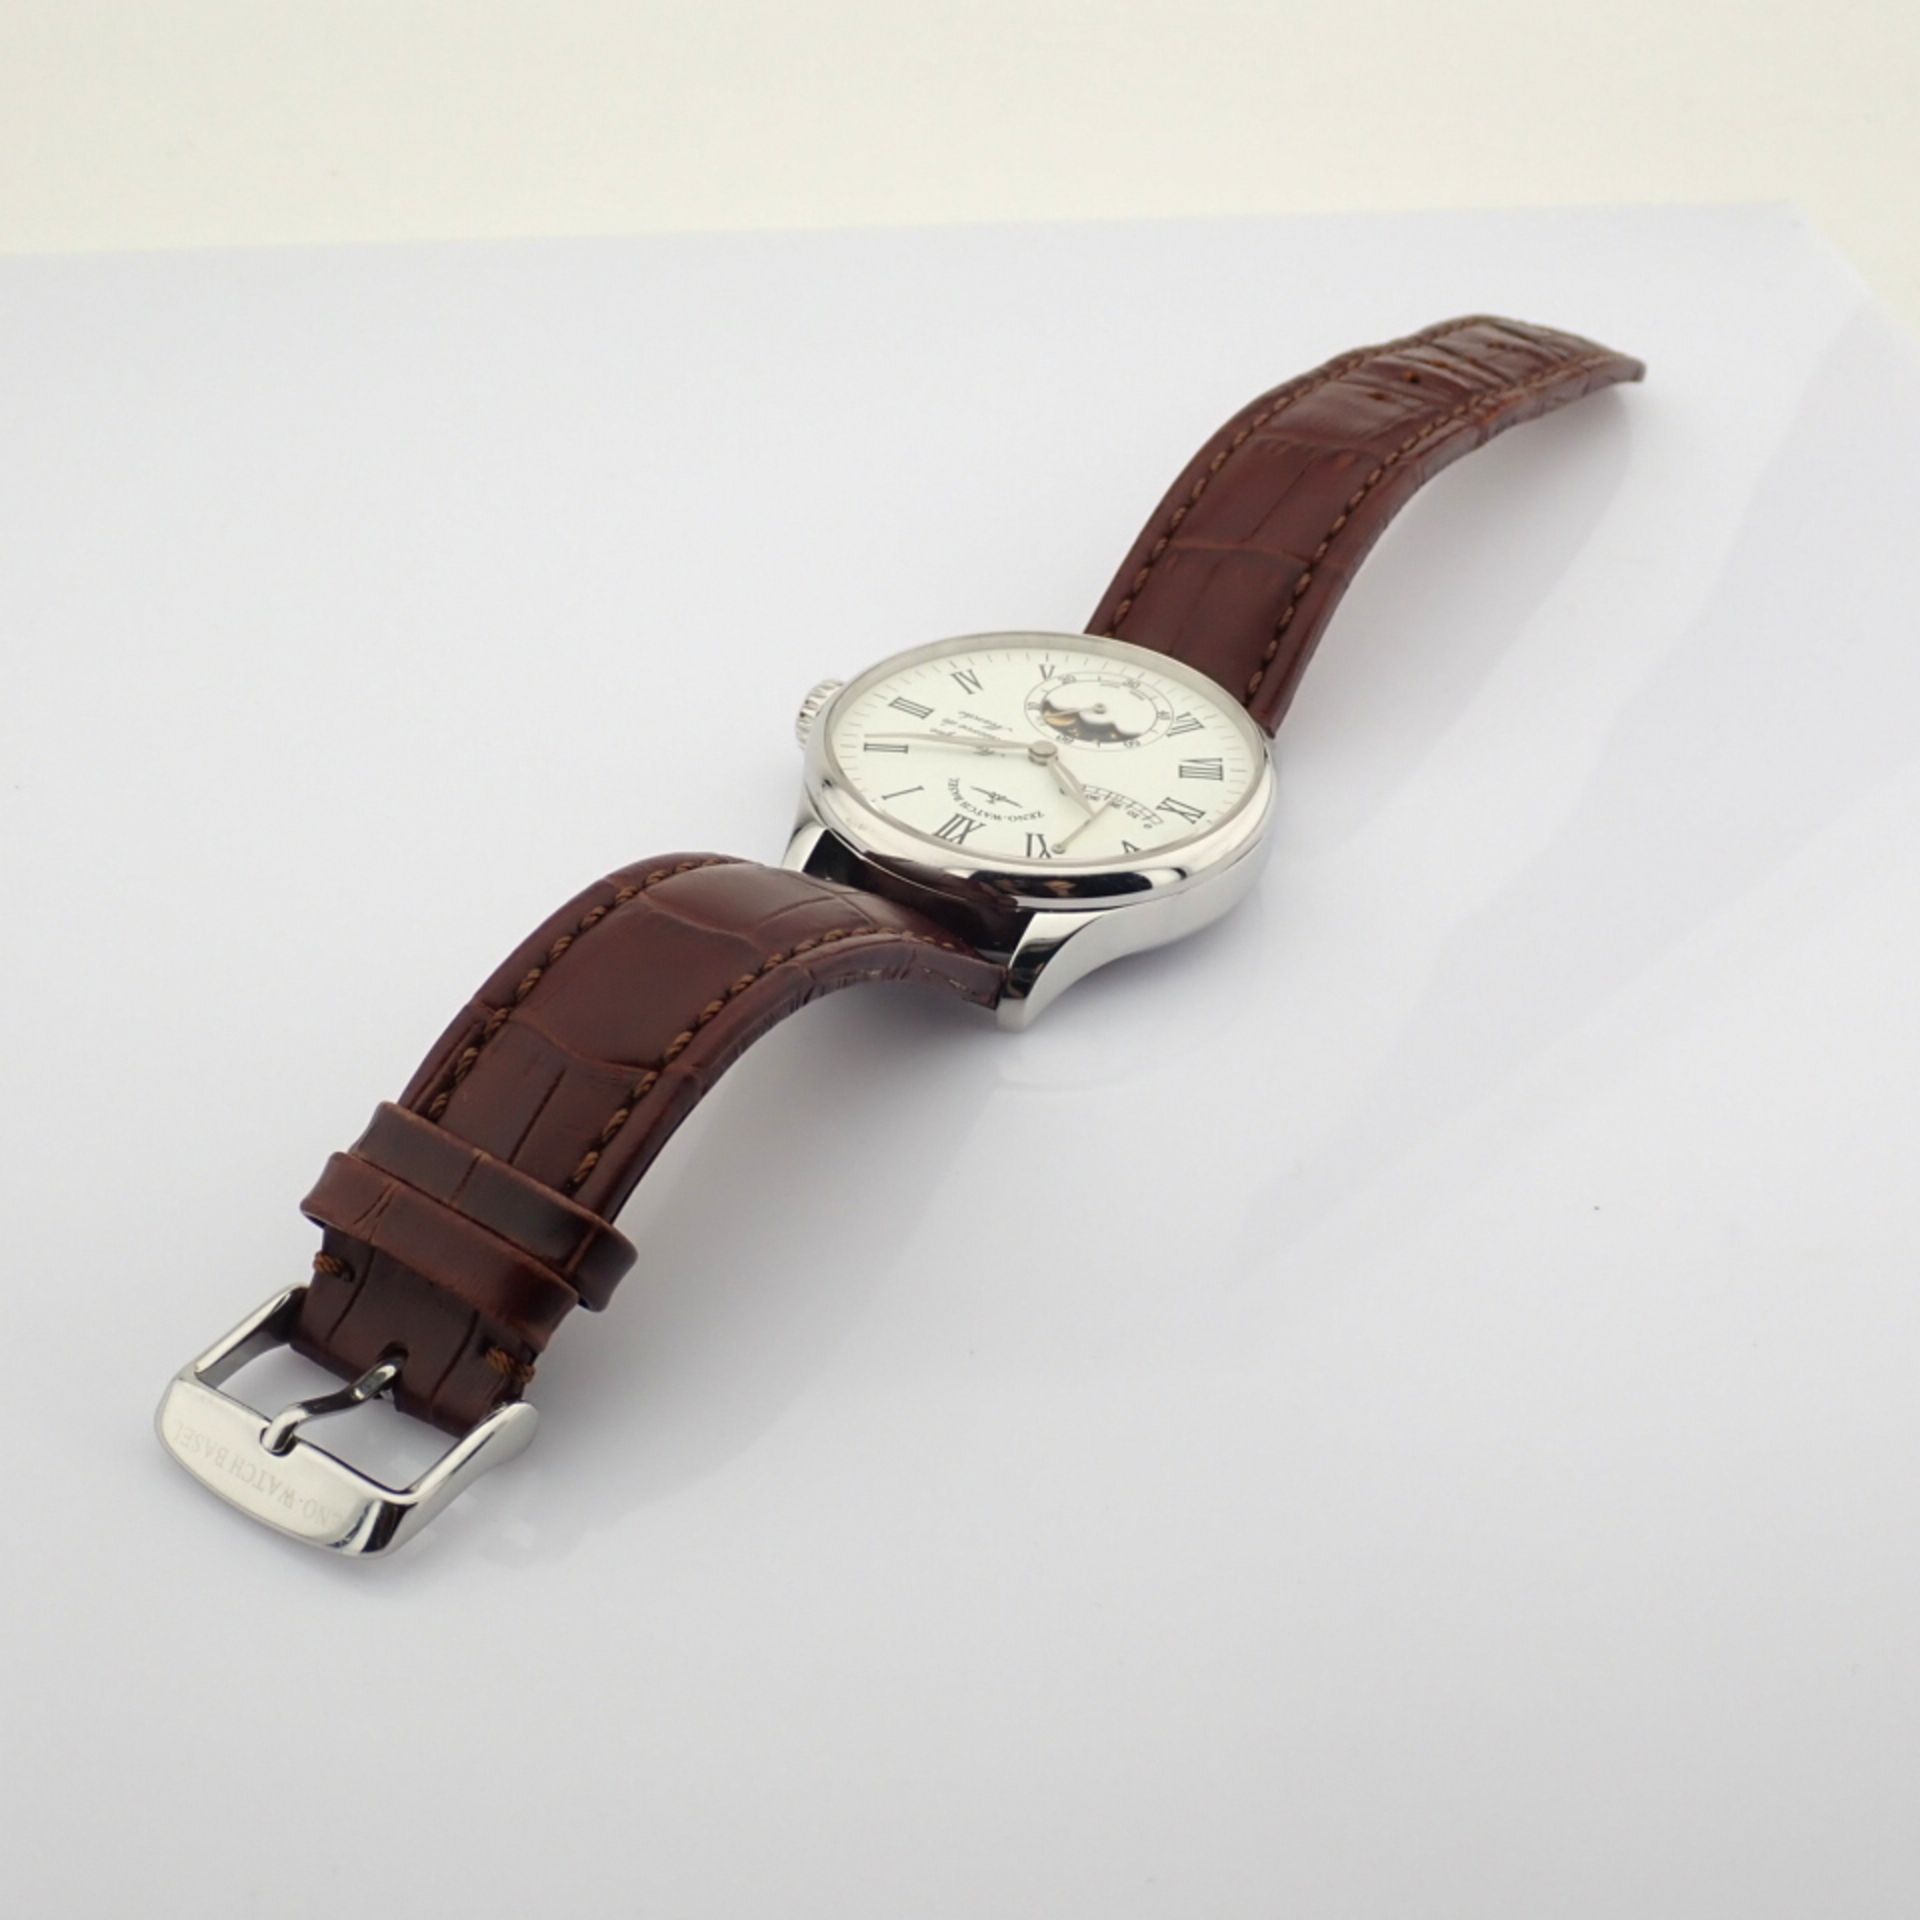 Zeno-Watch Basel / Godat II Roma Power Reserve - Gentlmen's Steel Wrist Watch - Image 9 of 12